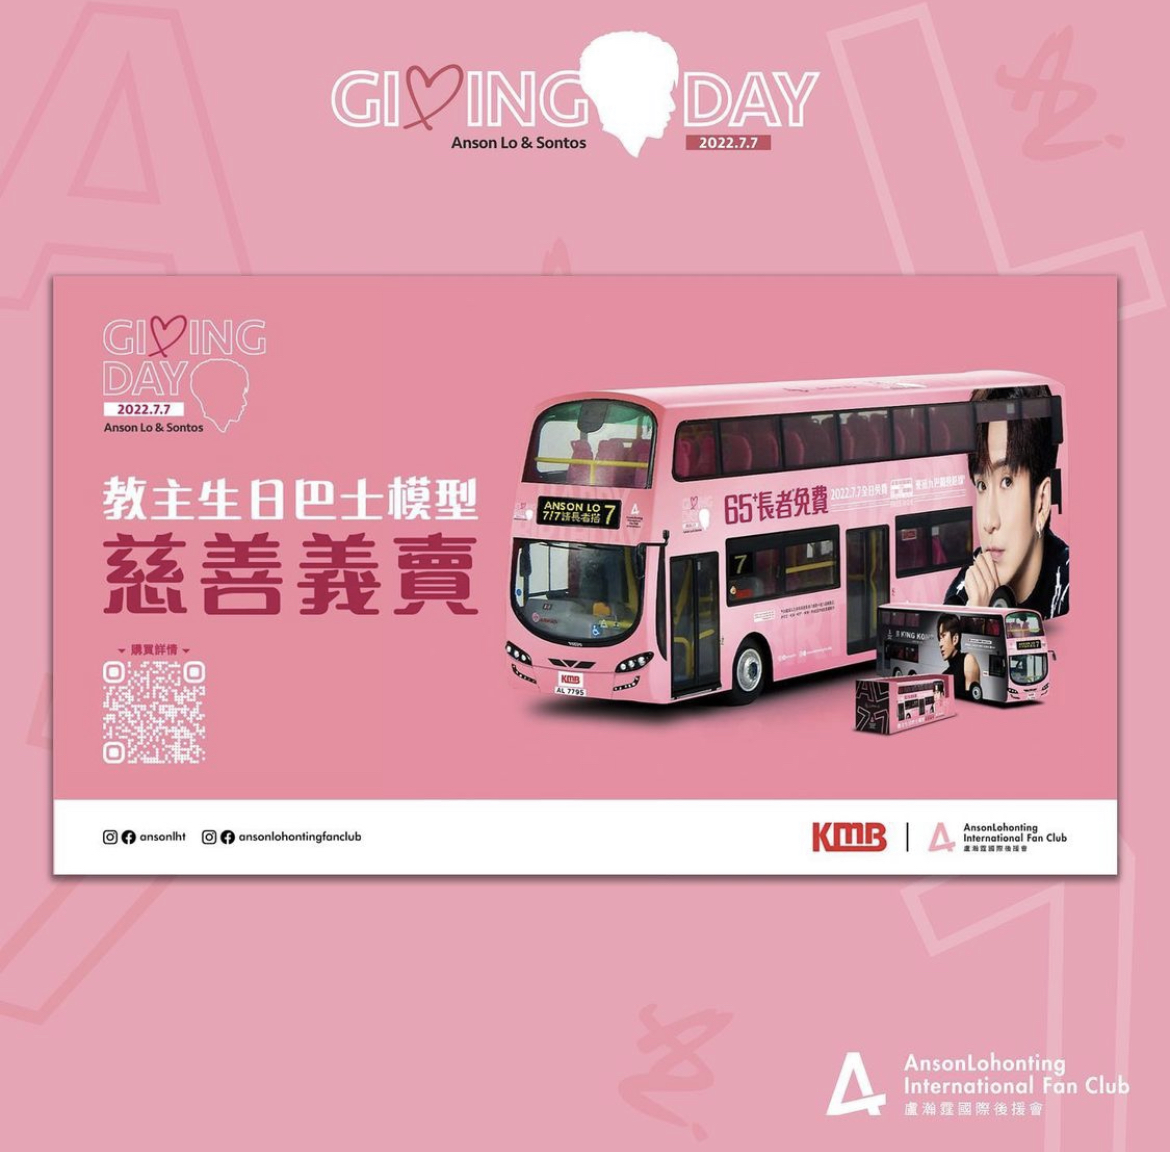 後援會更聯同九巴推出教主的生日主題巴士模型，香港及海外神徒都可以在網上預購。Instagram@ansonlohontingfanclub